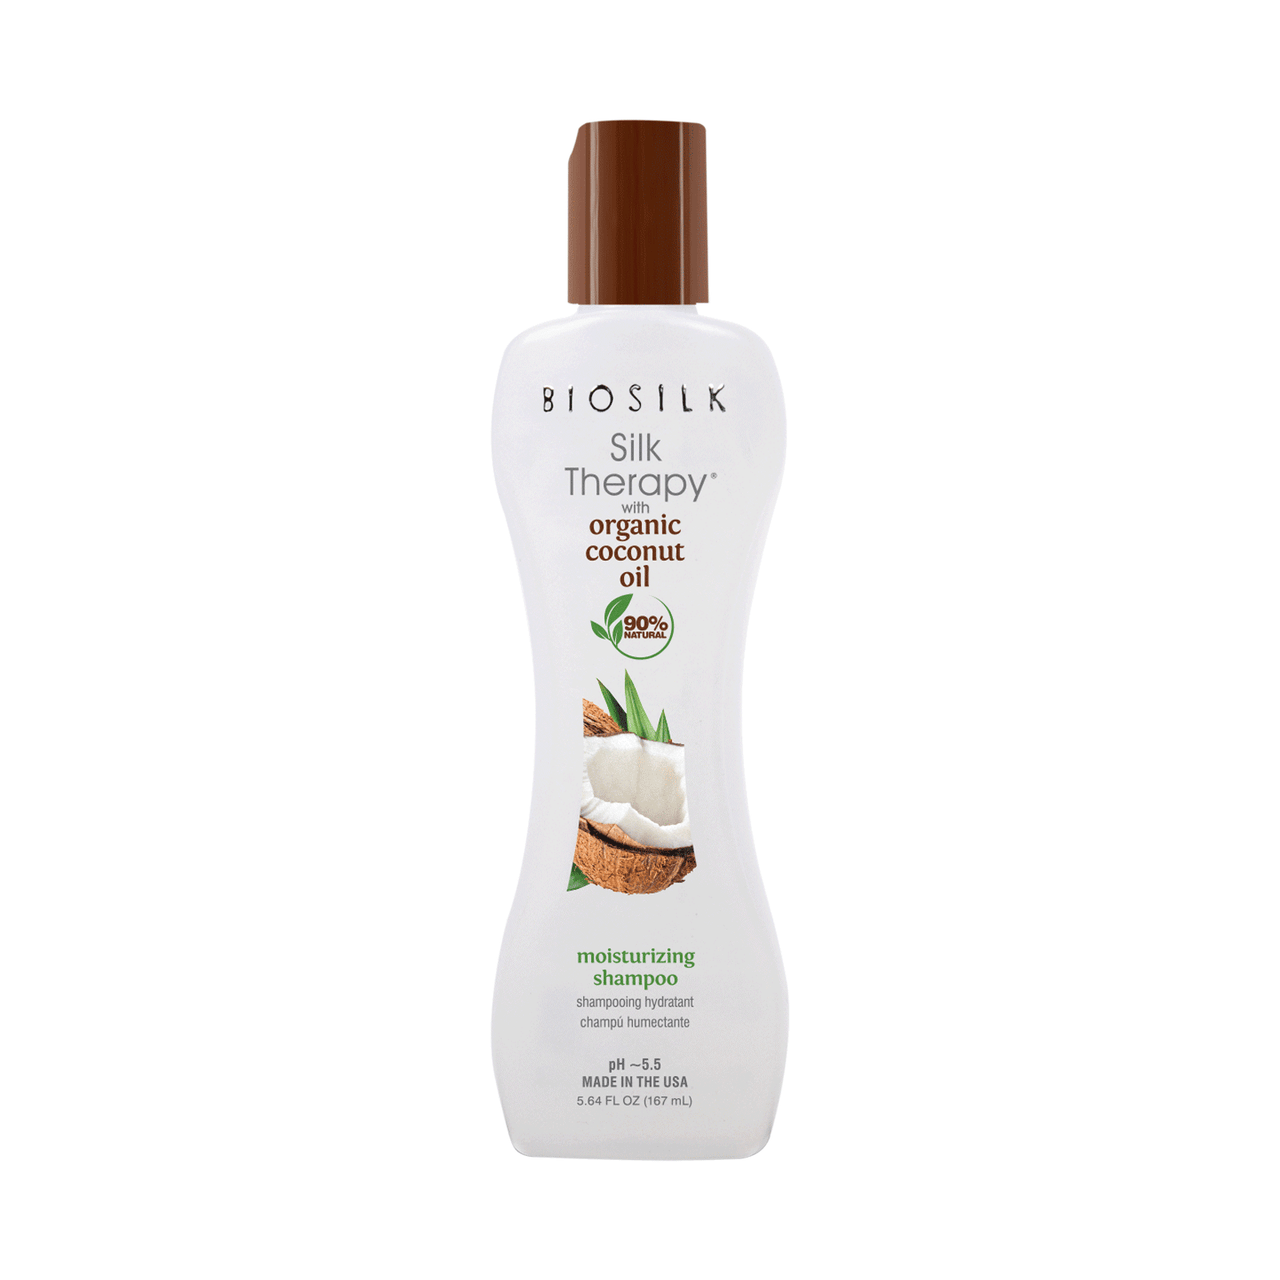 BioSilk Biosilk Silk Therapy with Coconut Oil Moisturizing Shampoo 5.64 fl oz